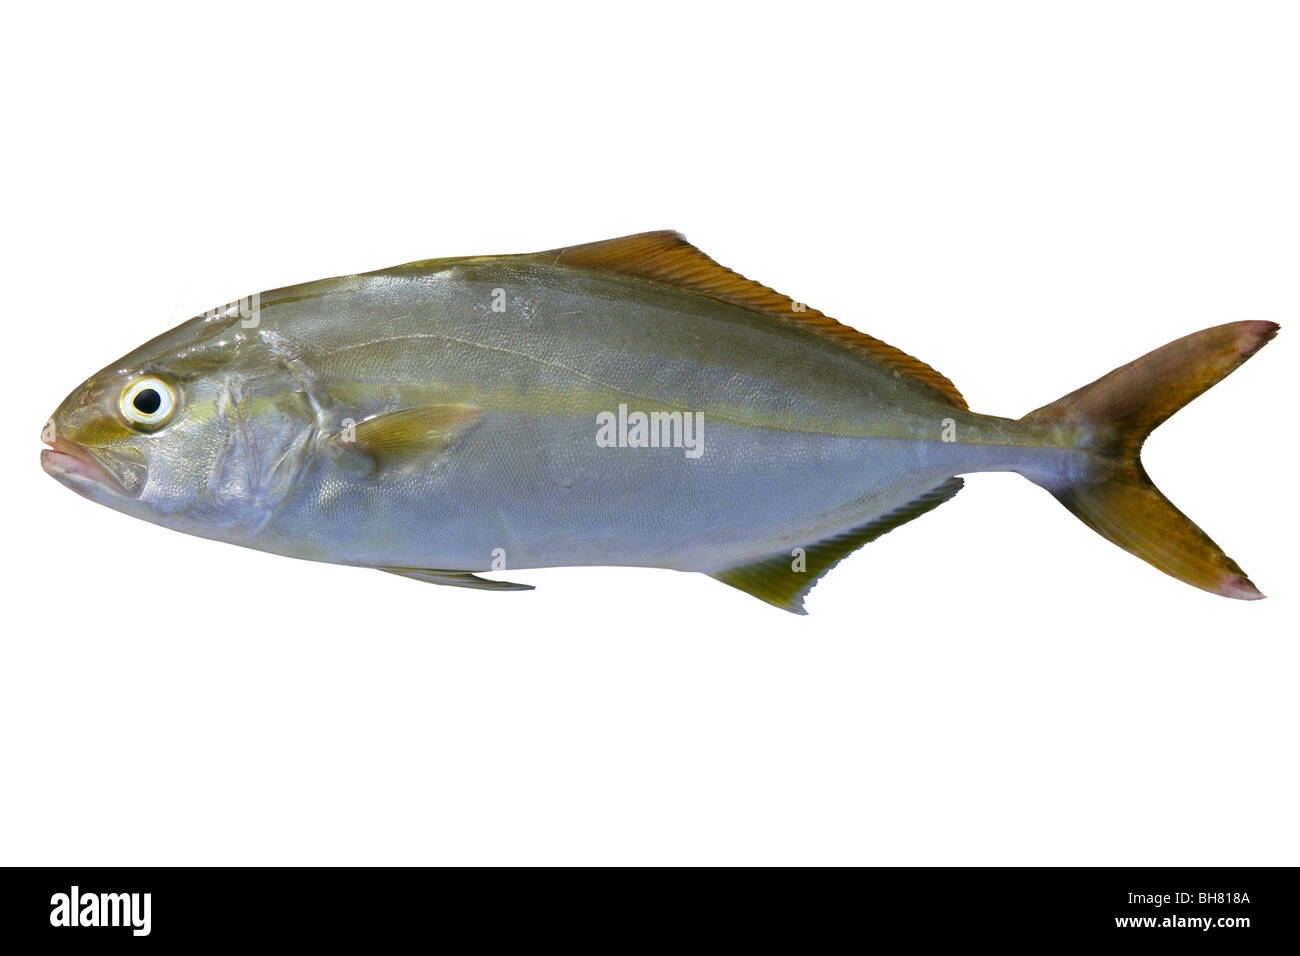 Seriola dumerili fish greater amberjack fish isolated on white Stock Photo